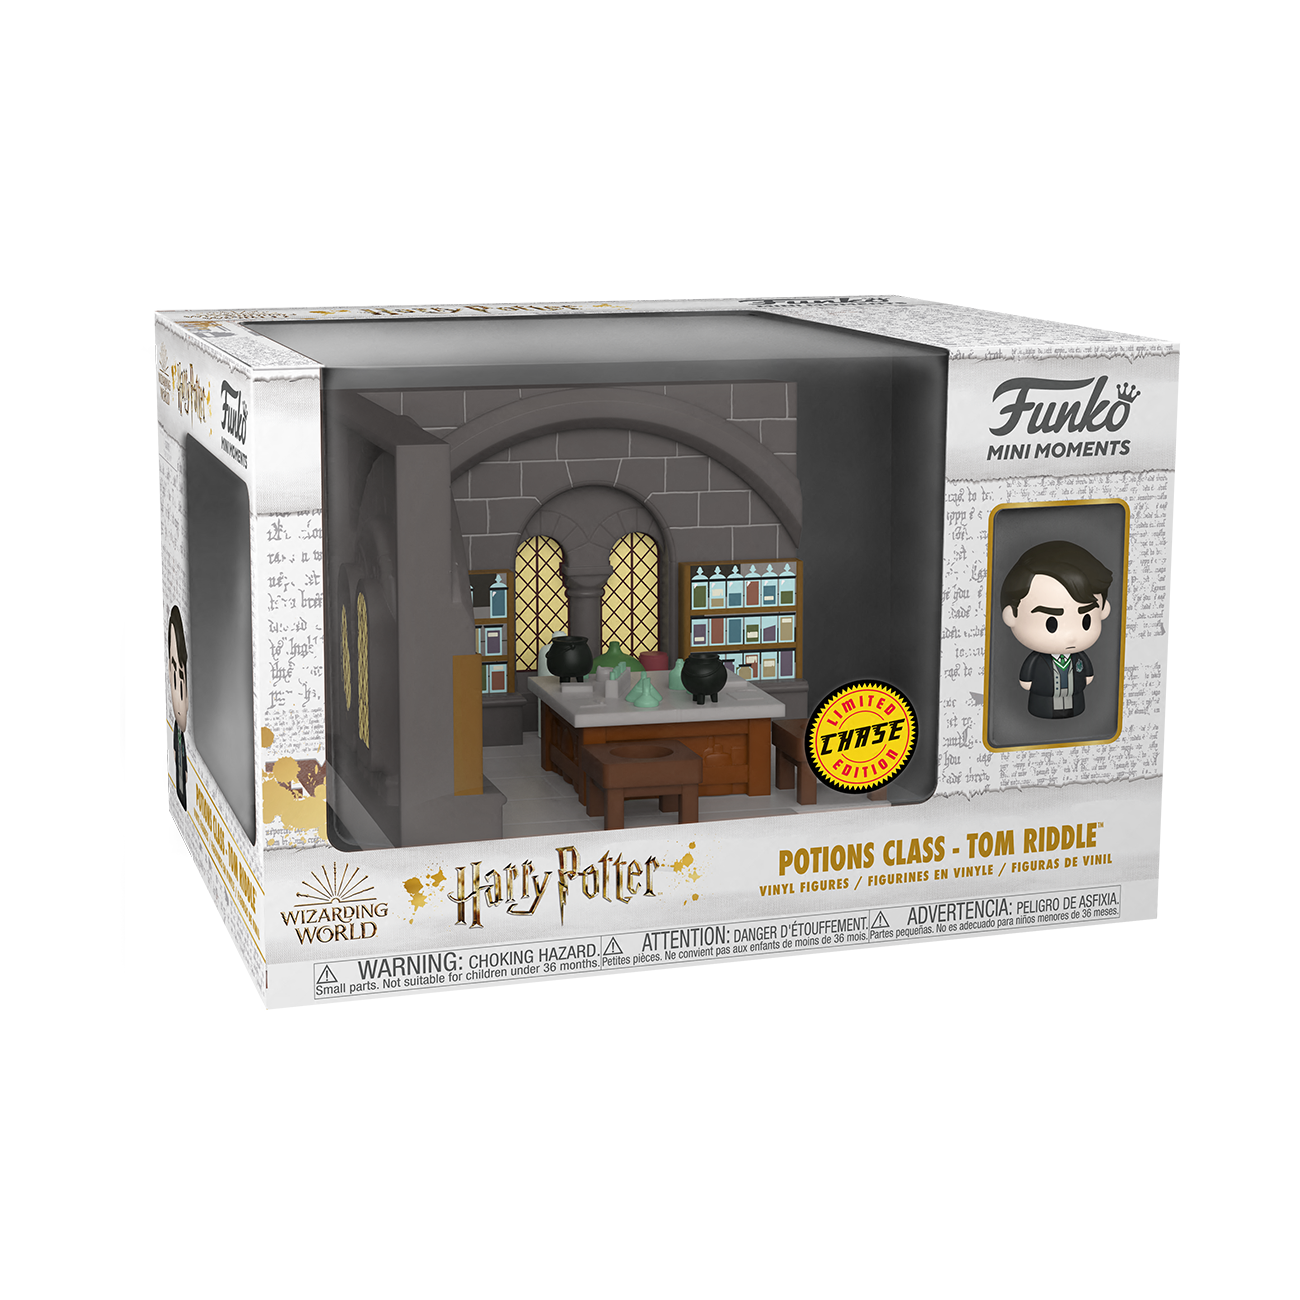 Funko Pop Mini Moments: Harry Potter Aniversario - Draco Malfoy Navidad